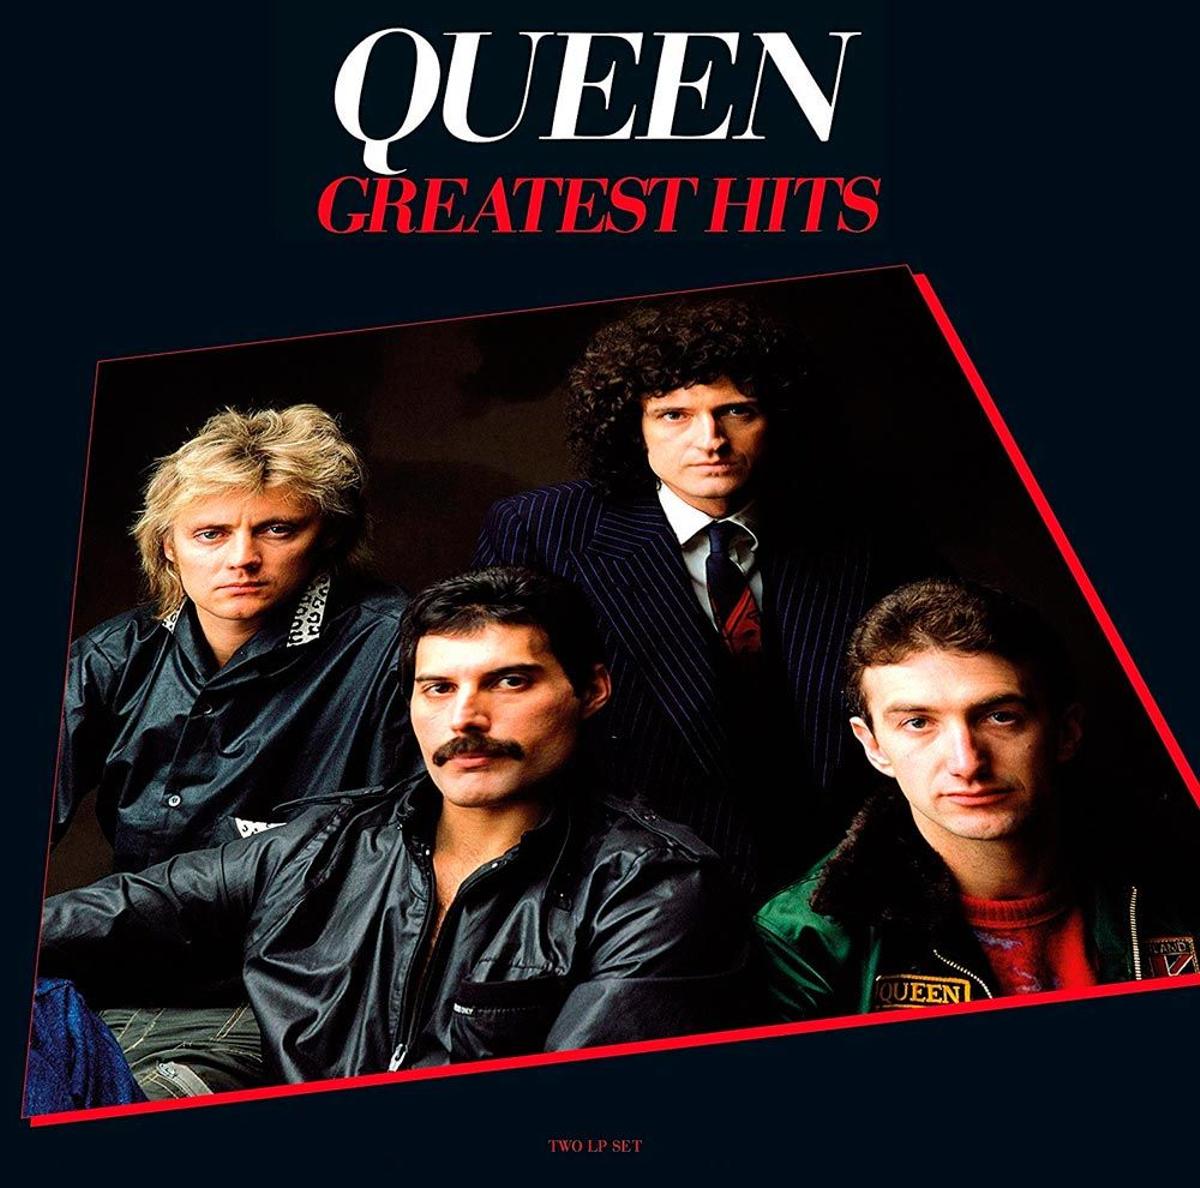 Vinilo 'Greatest Hits' de Queen a la venta en Amazon. (Precio: 23, 24 euros)